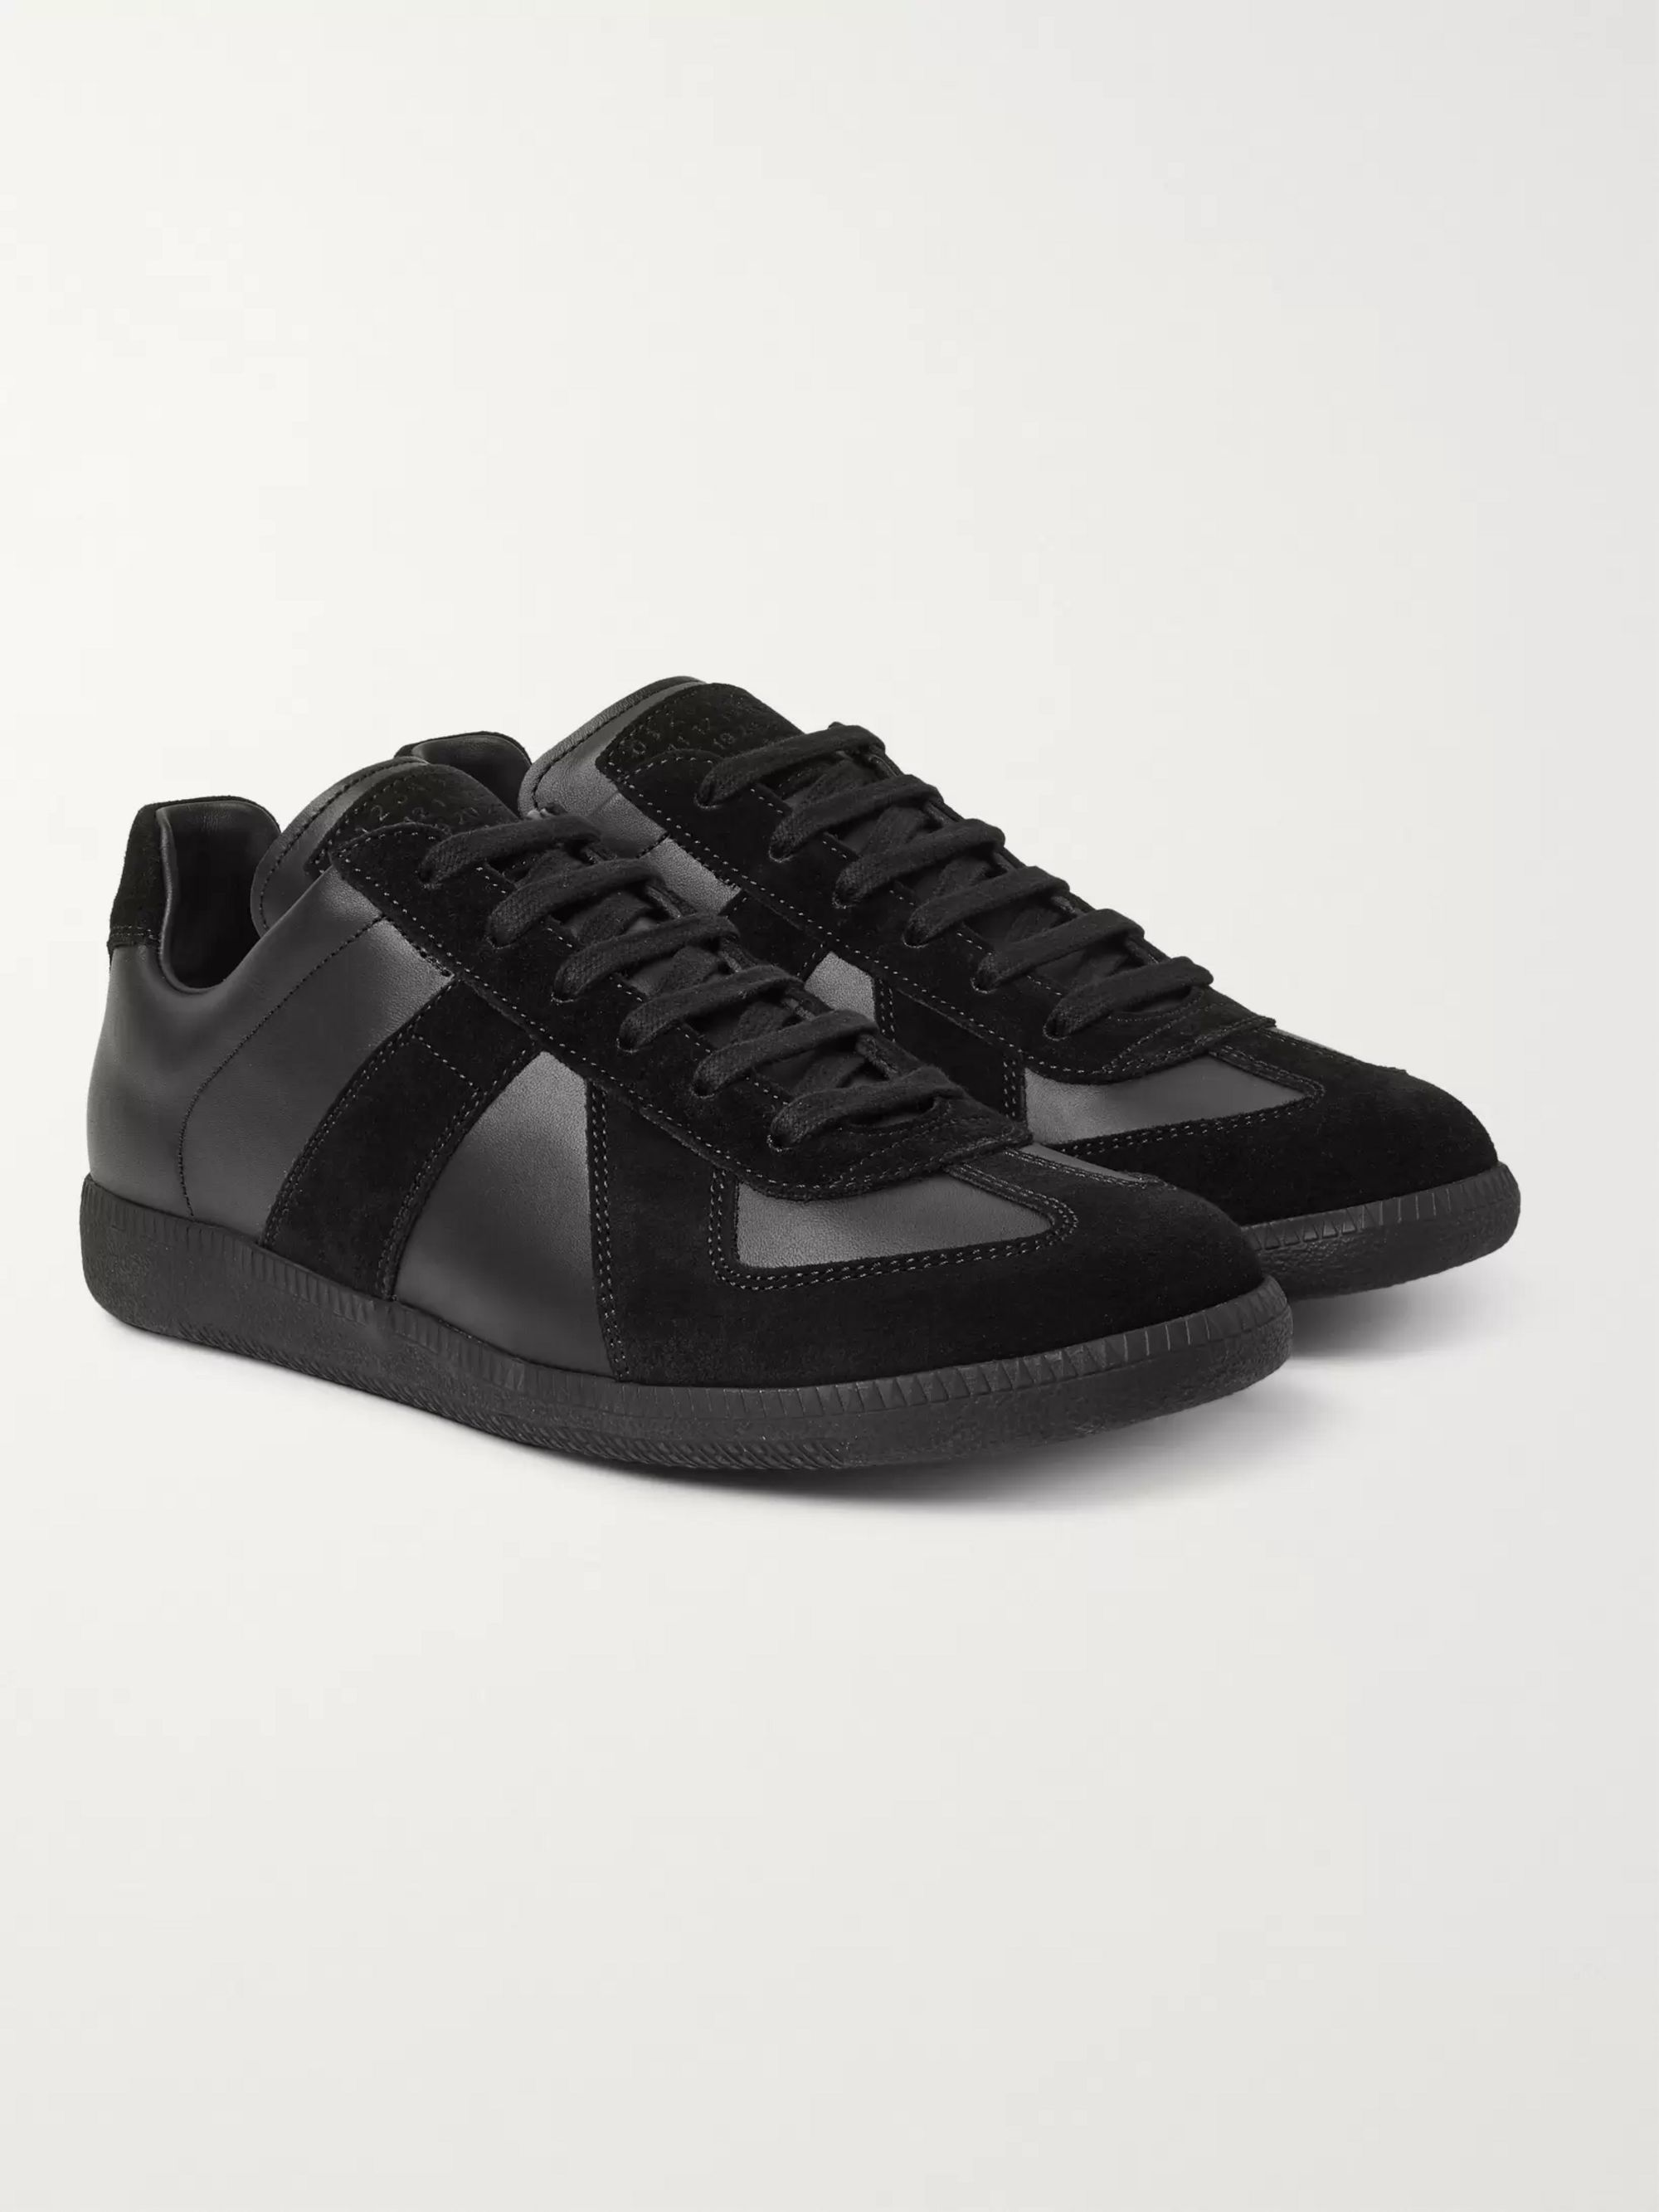 margiela black sneakers